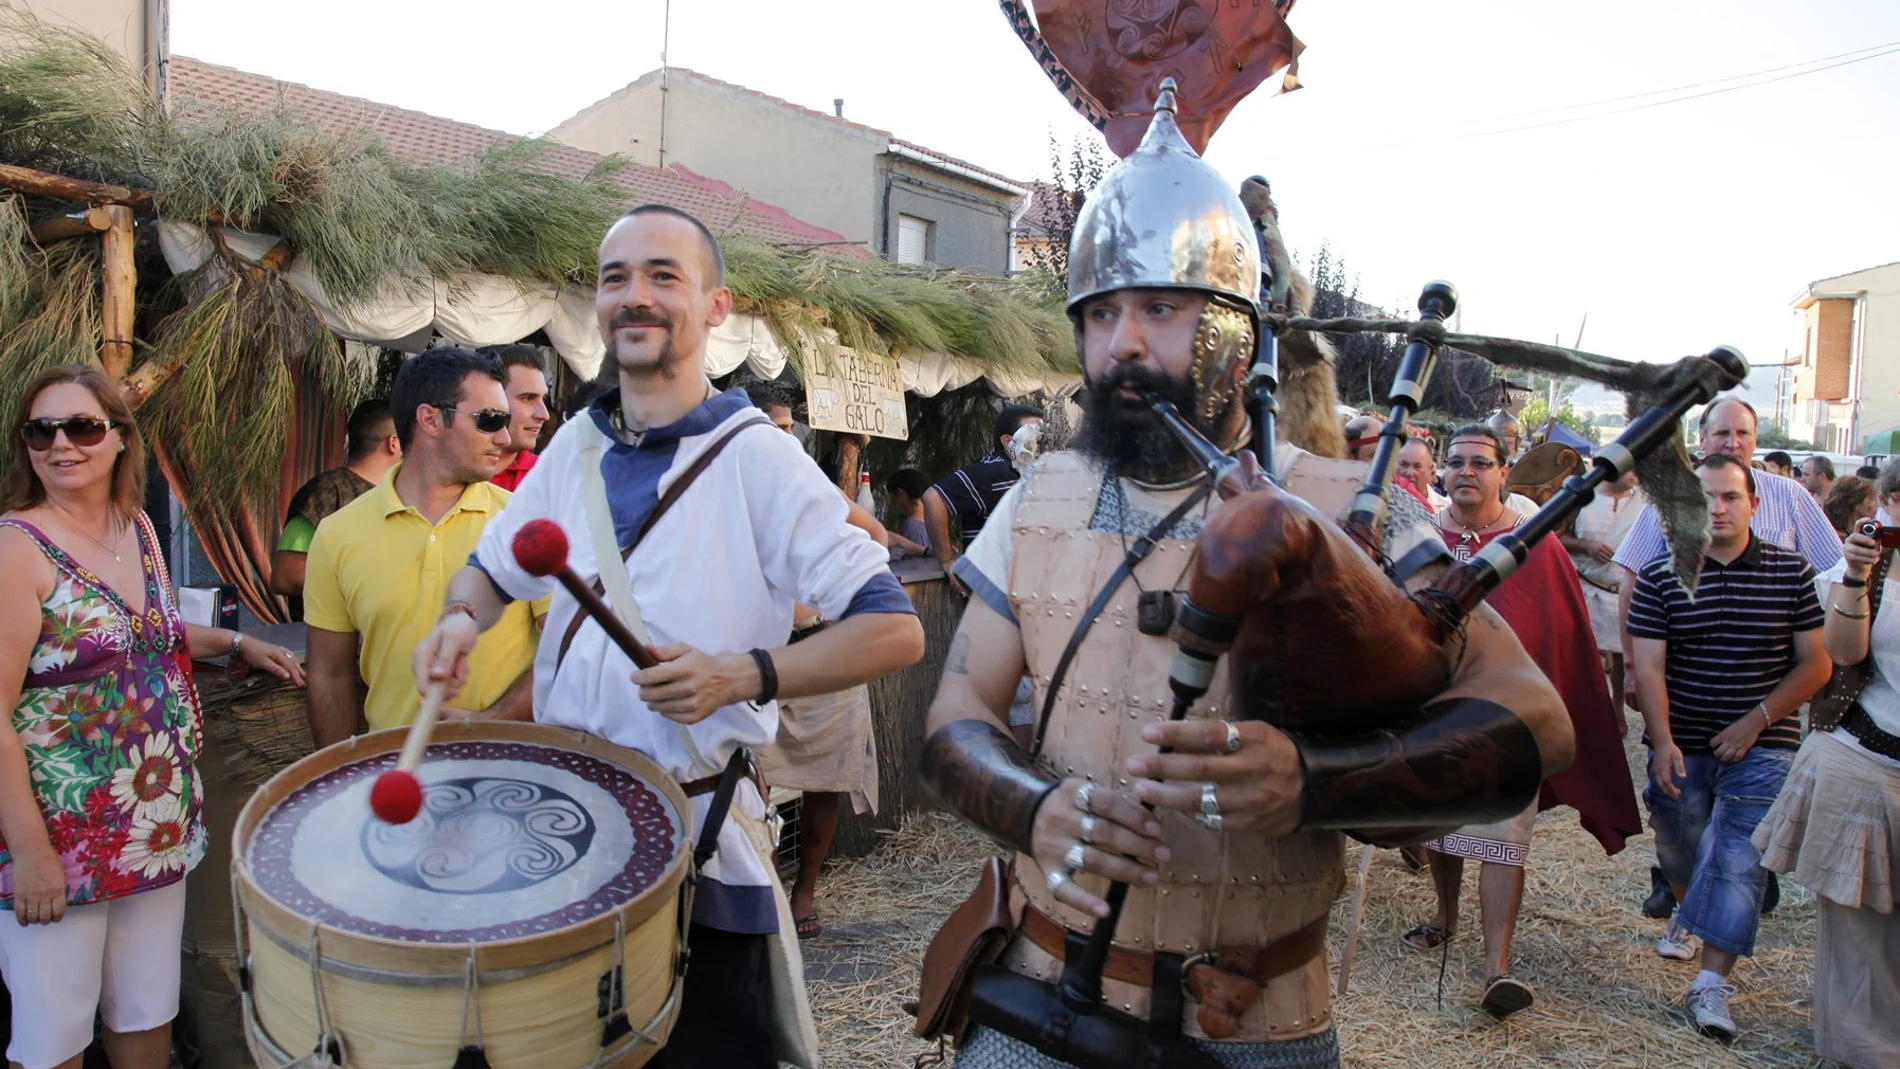 Un grupo de músicos ameniza el festival Luna Celta, en Solosancho (Ávila)